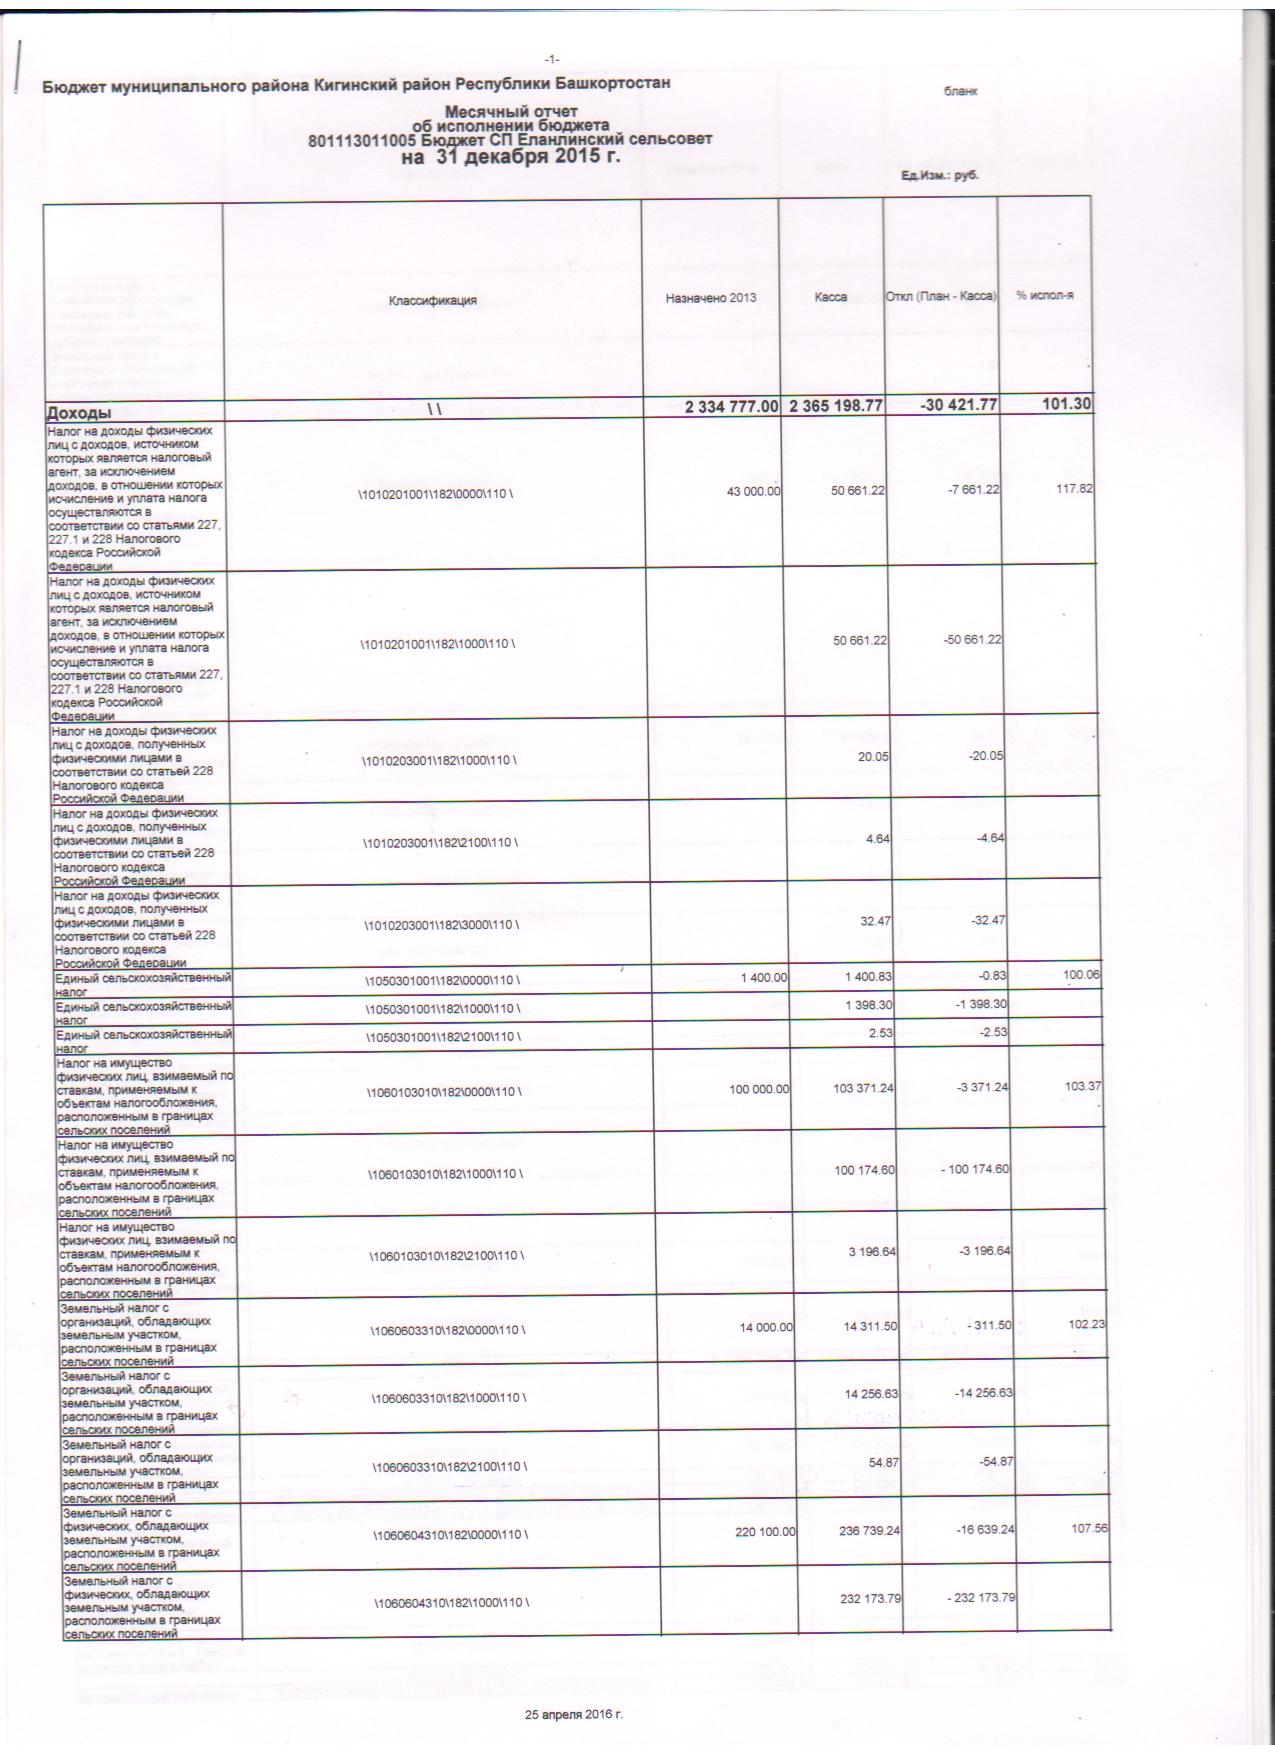 месячный отчет об исполнении бюджета на 31.12.2015г.